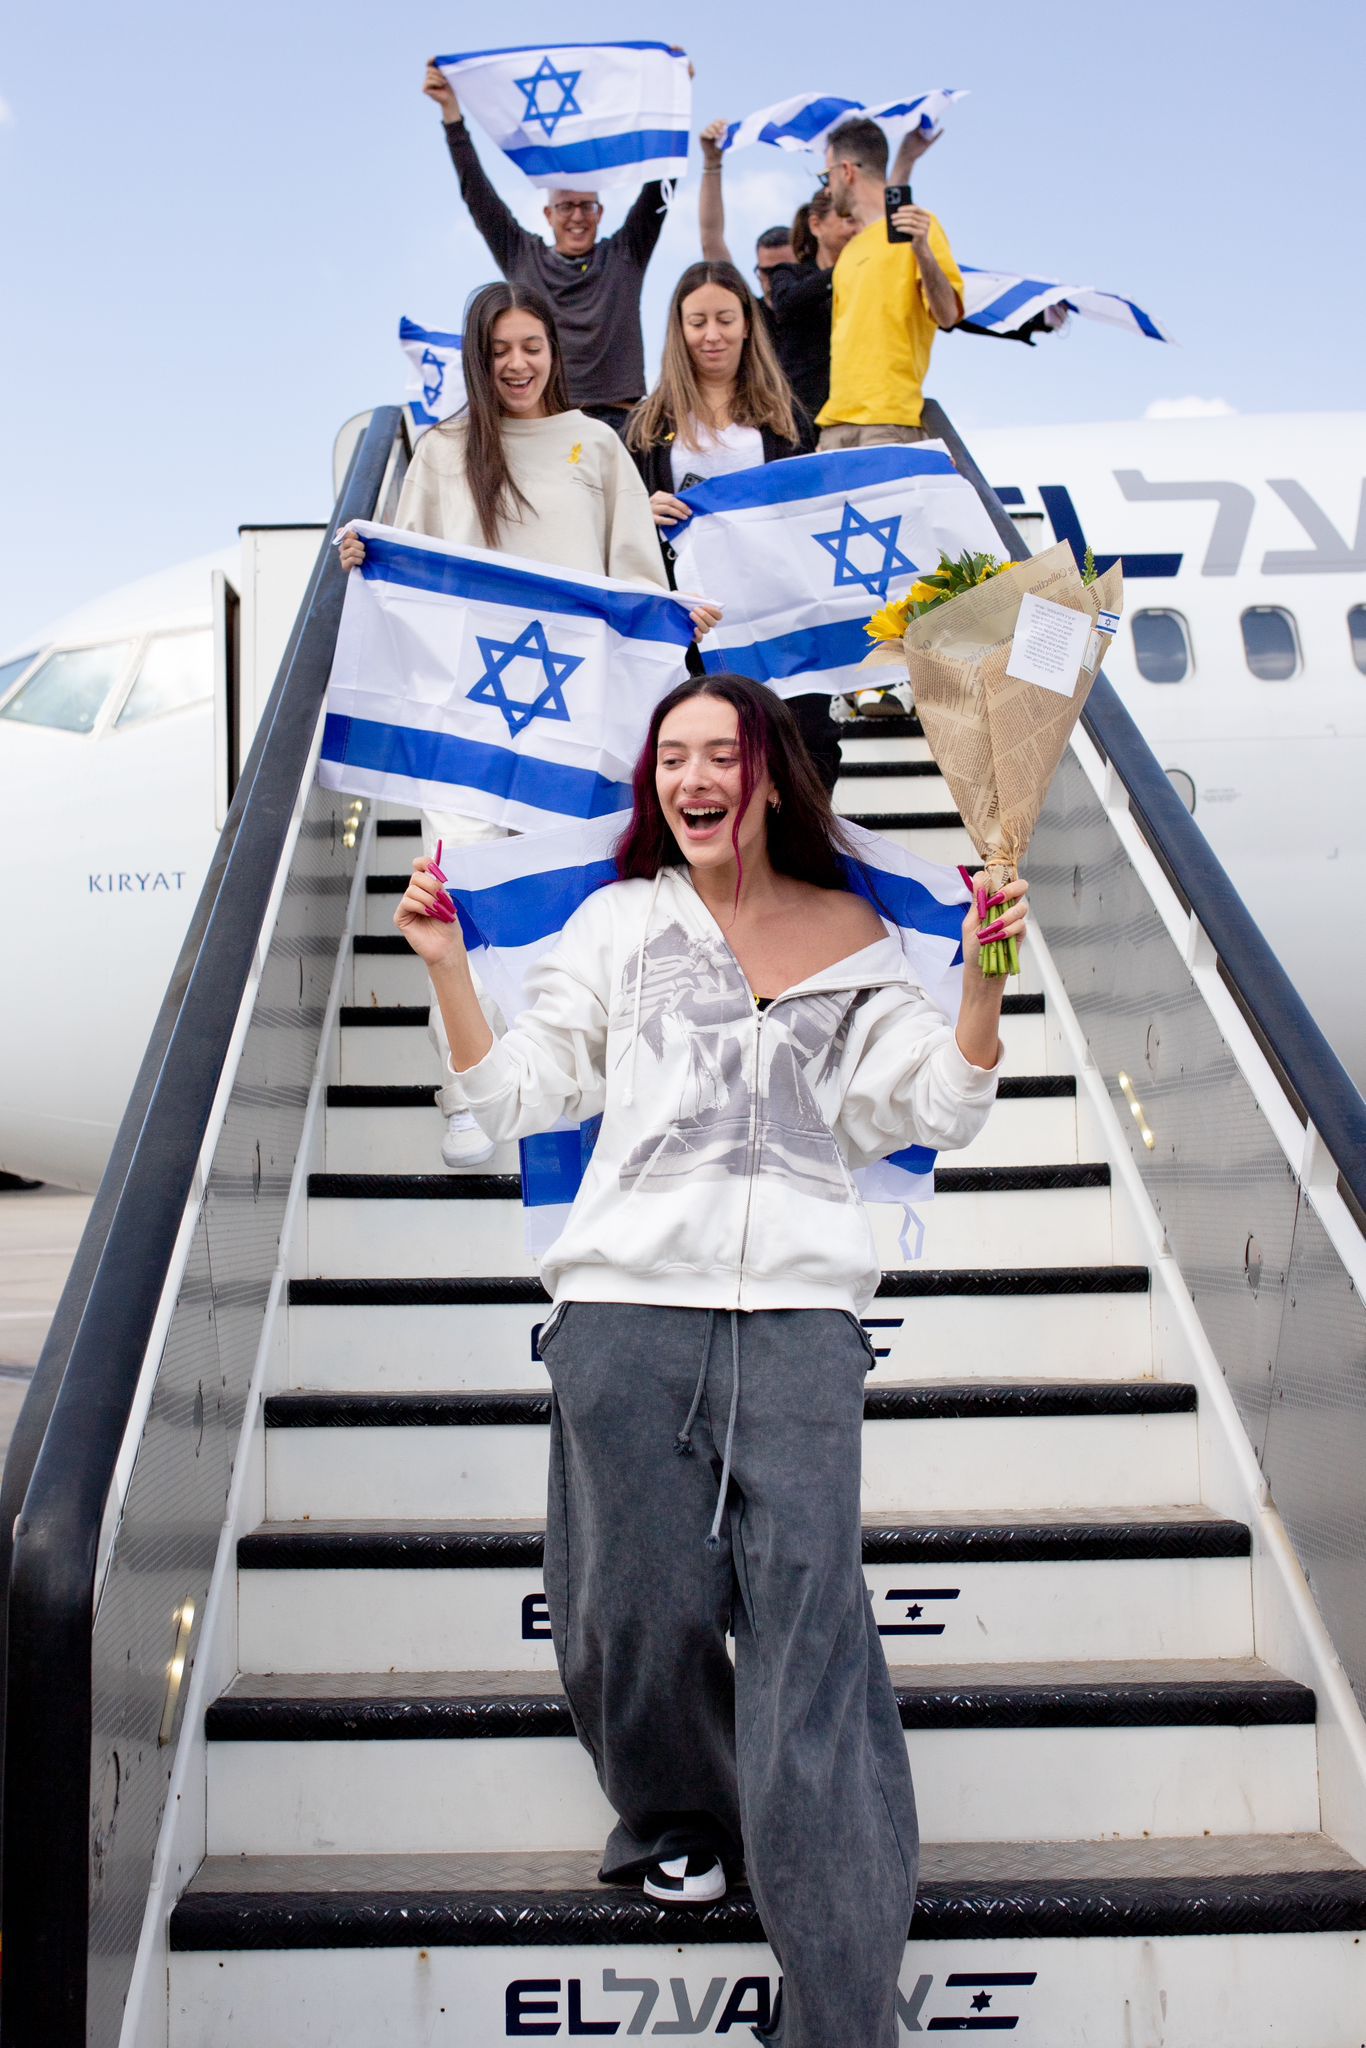 طائرة تابعة ال عال من مالمو تهبط في إسرائيل وعلى متنها عيدن جولان والوفد الإسرائيلي المشارك في يوروفيجن